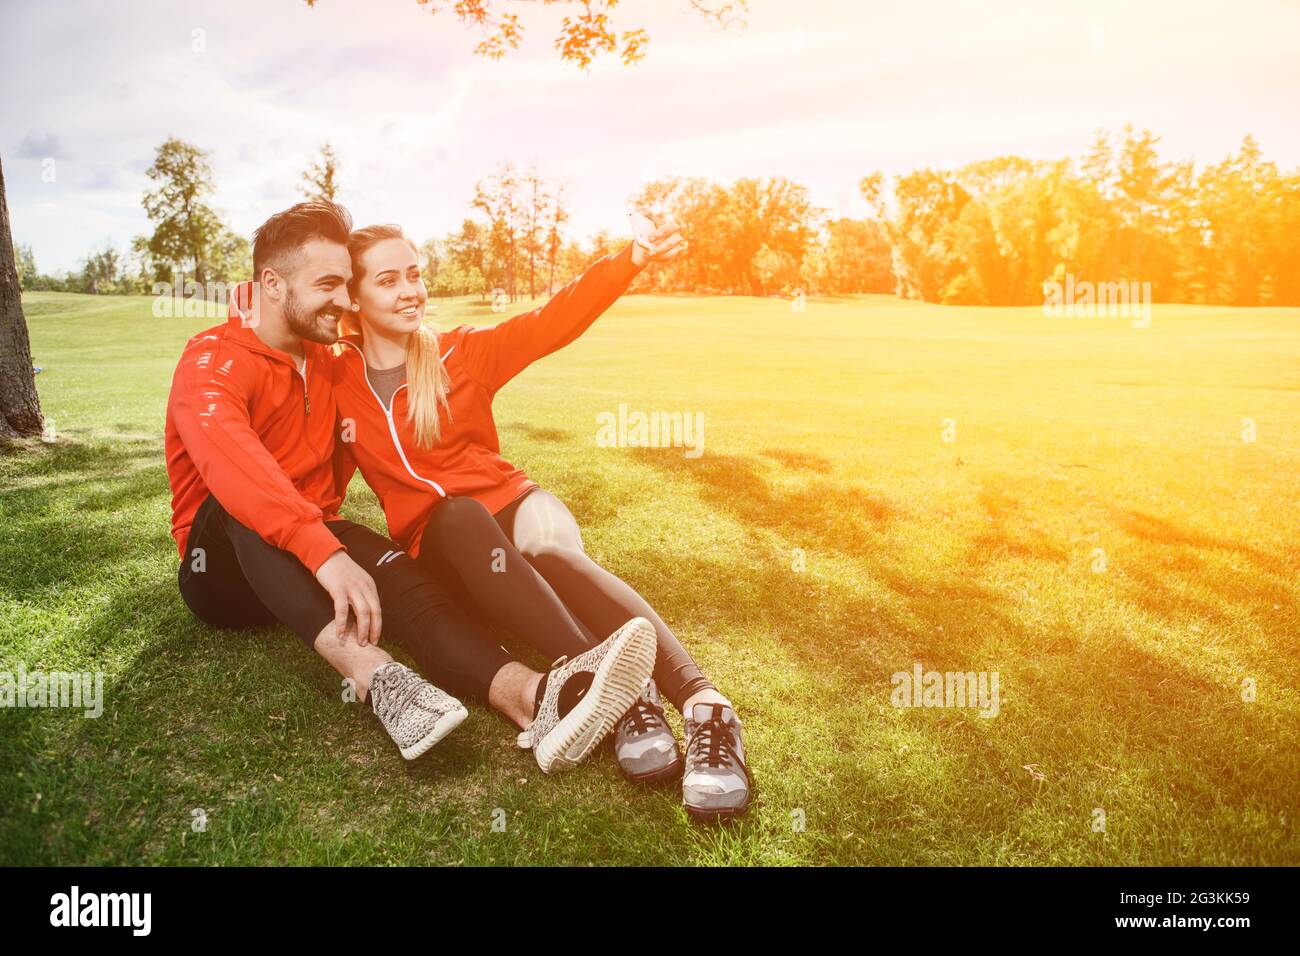 Sport-Mann und Frau machen Selfies im park Stockfoto